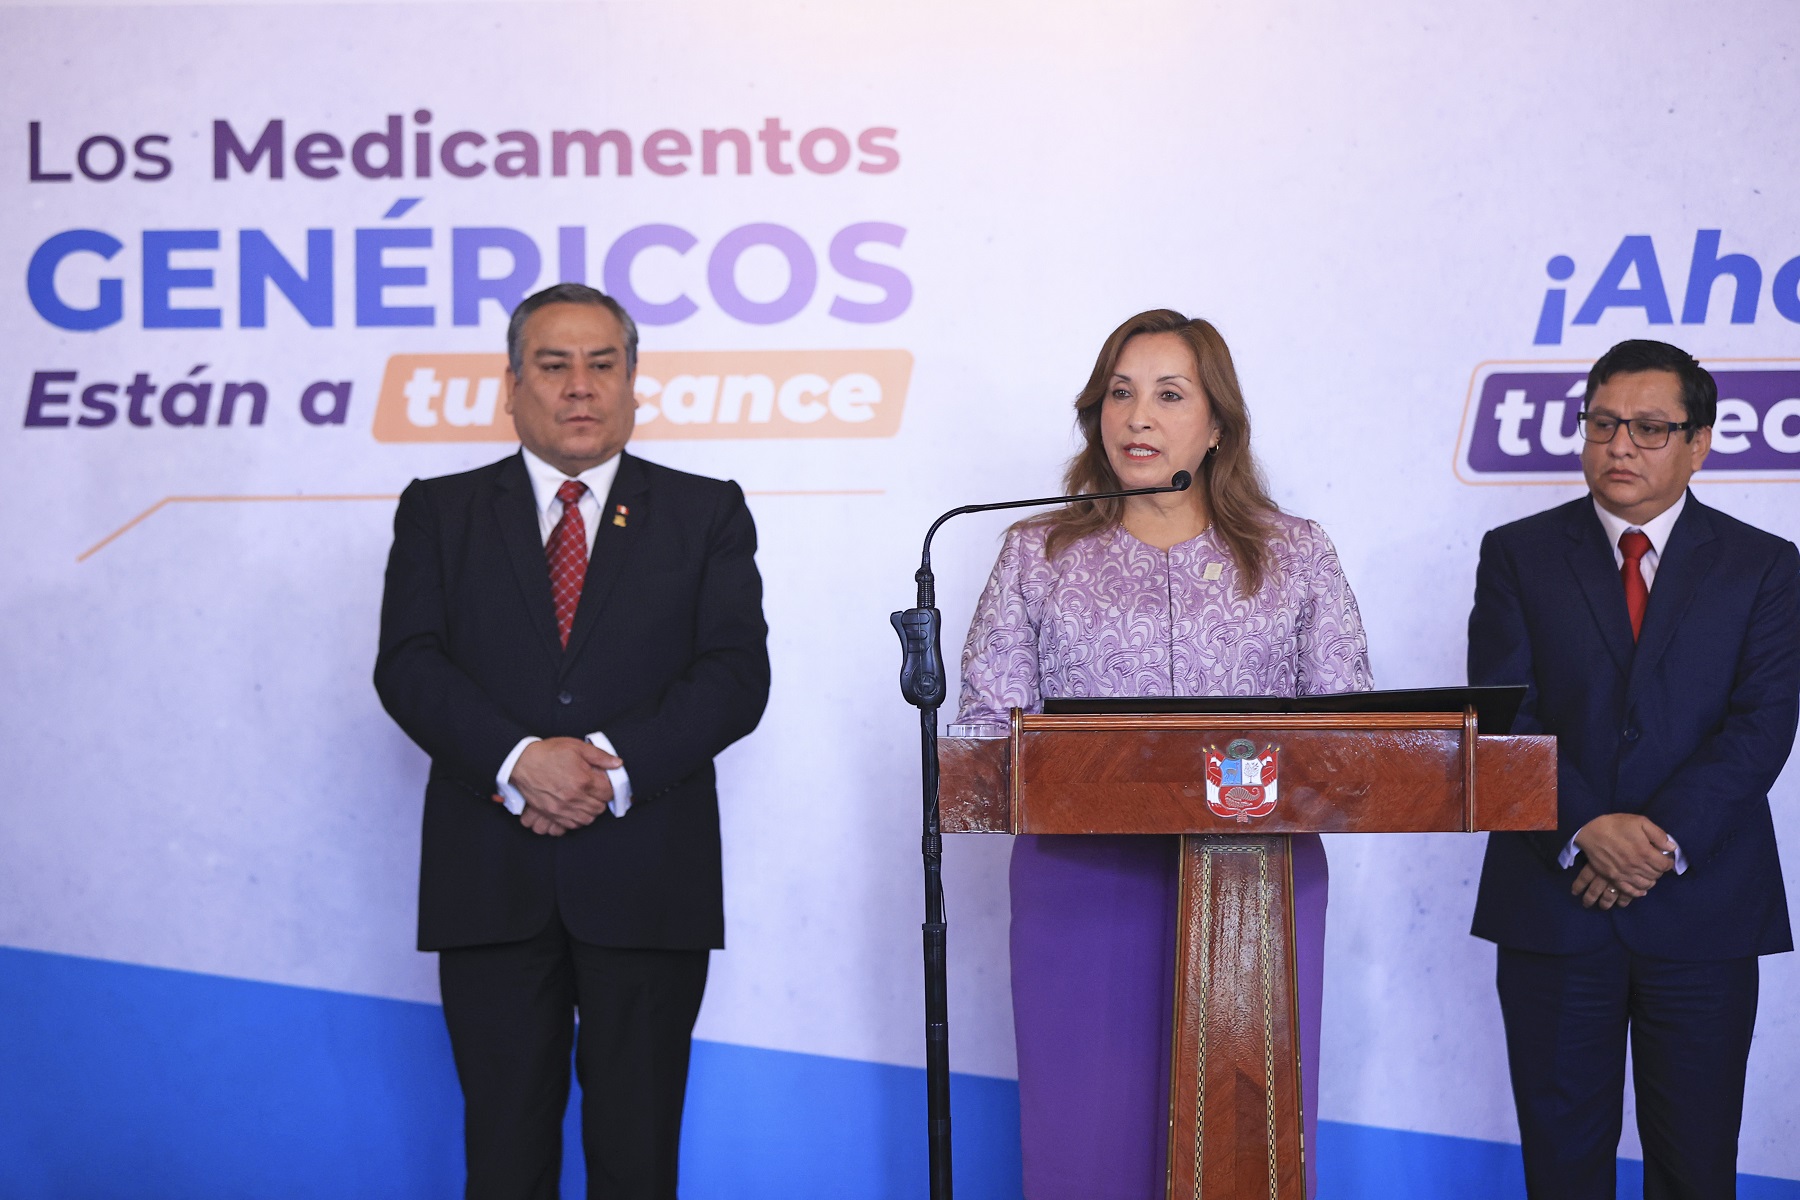 Promulgación de ley que garantiza acceso a medicamentos genéricos, permitirá que mas de 400 fármacos estén al alcance todos los peruanos.